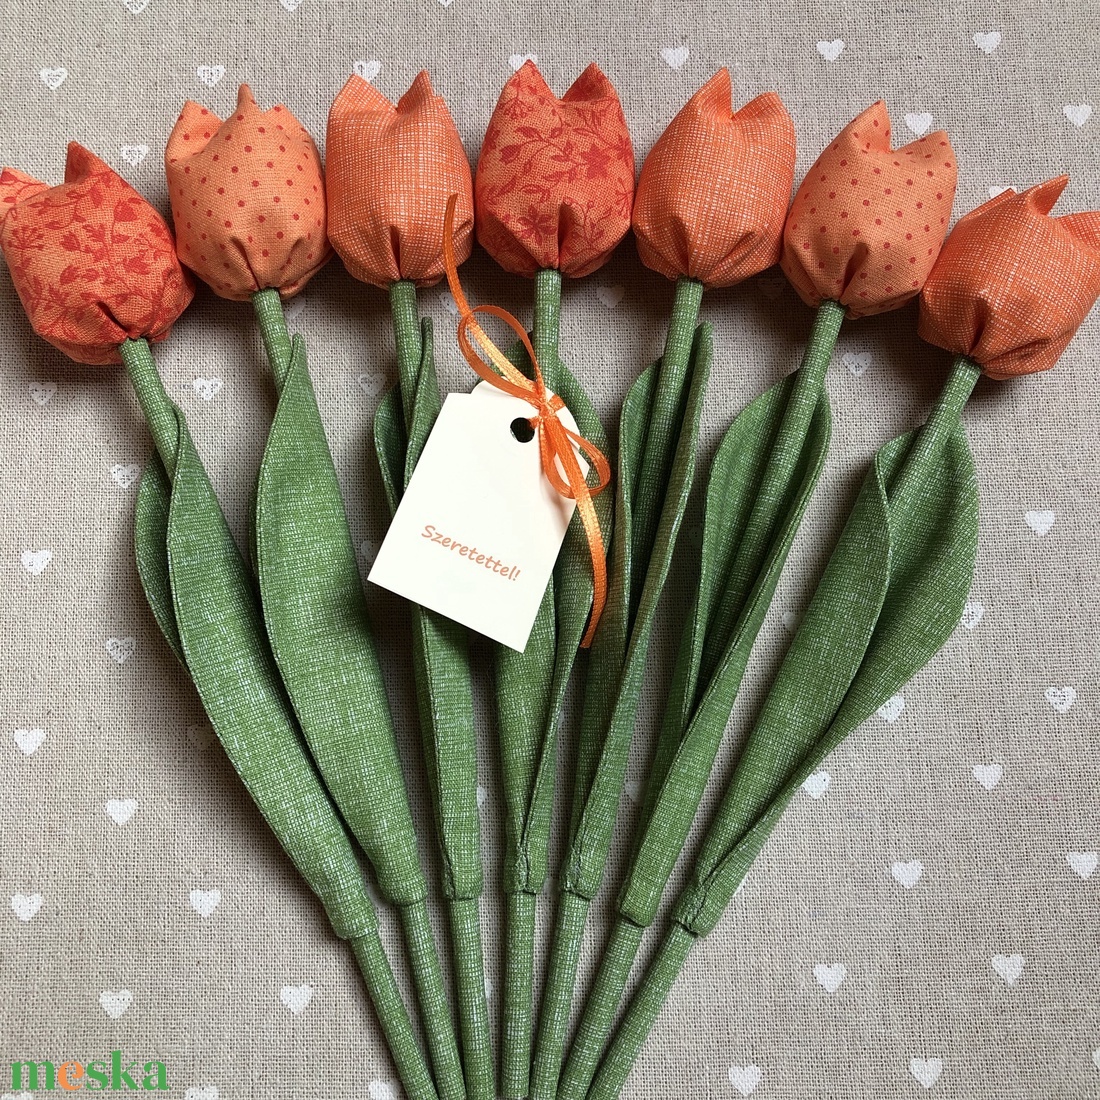 Tulipán /szett: 7 db/ ajándékkártyával - otthon & lakás - dekoráció - virágdísz és tartó - csokor & virágdísz - Meska.hu